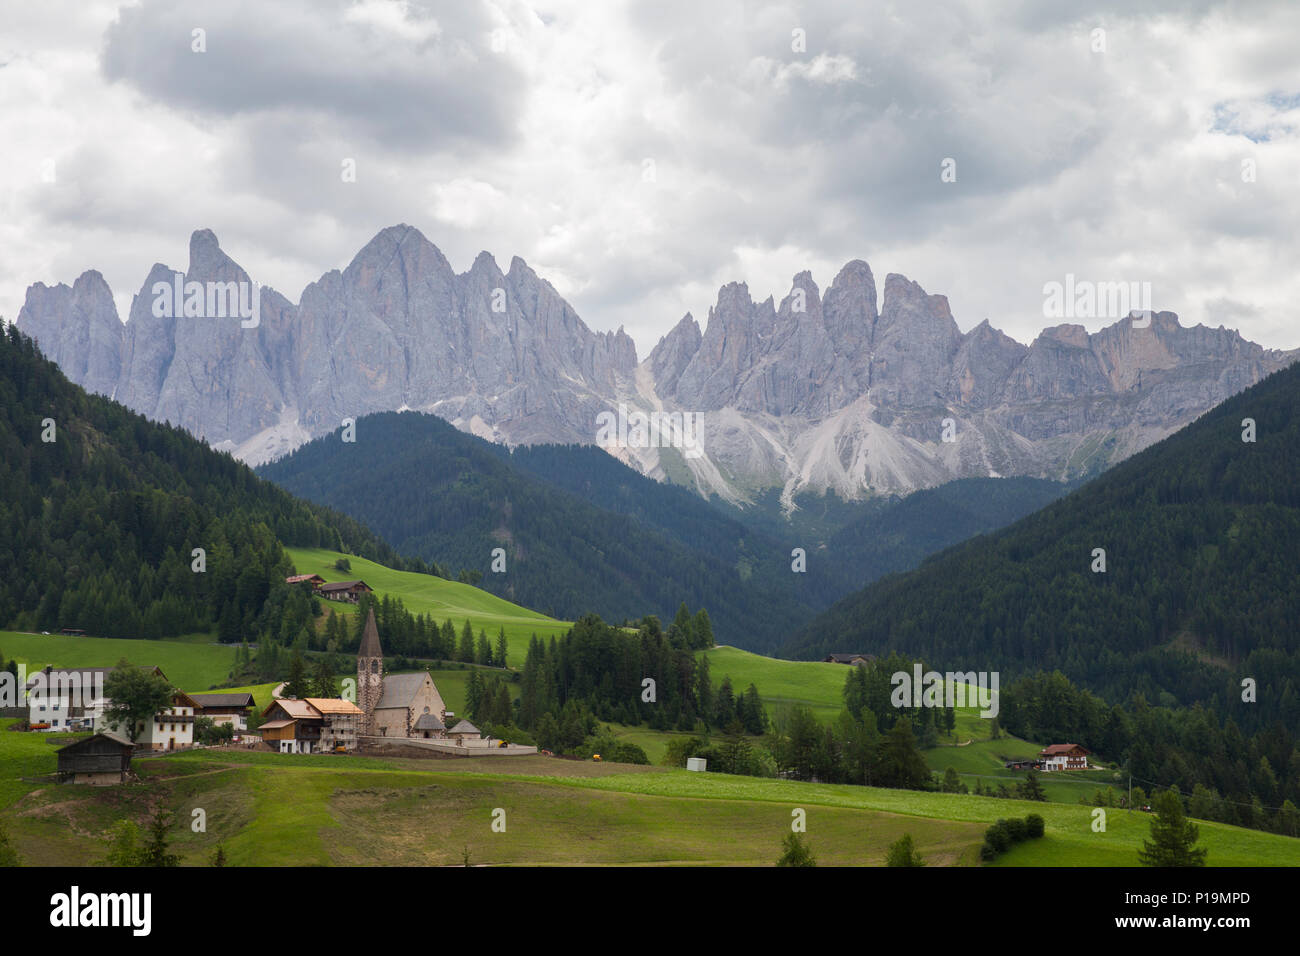 Maddalena villaggio in Val di Funes/Villnoss valley, provincia del sud Tirolo, Italia Foto Stock